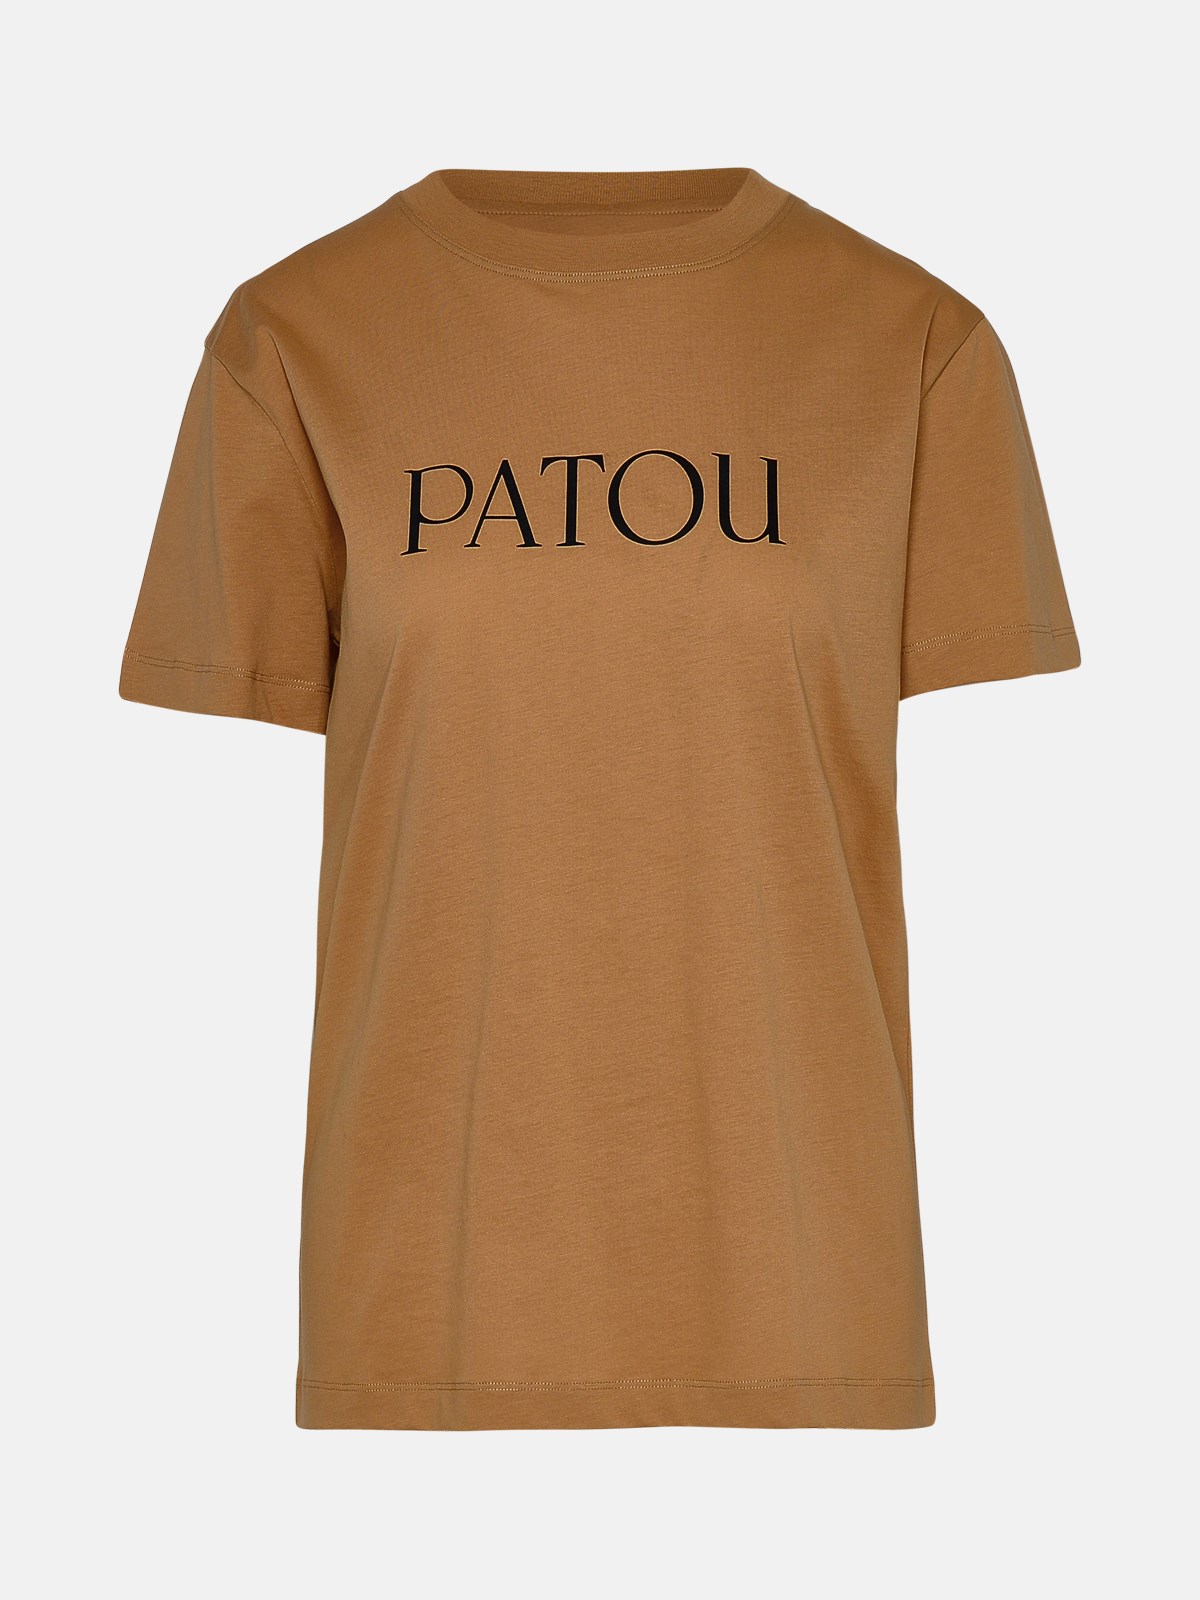 Patou Essential Beige Cotton T-shirt